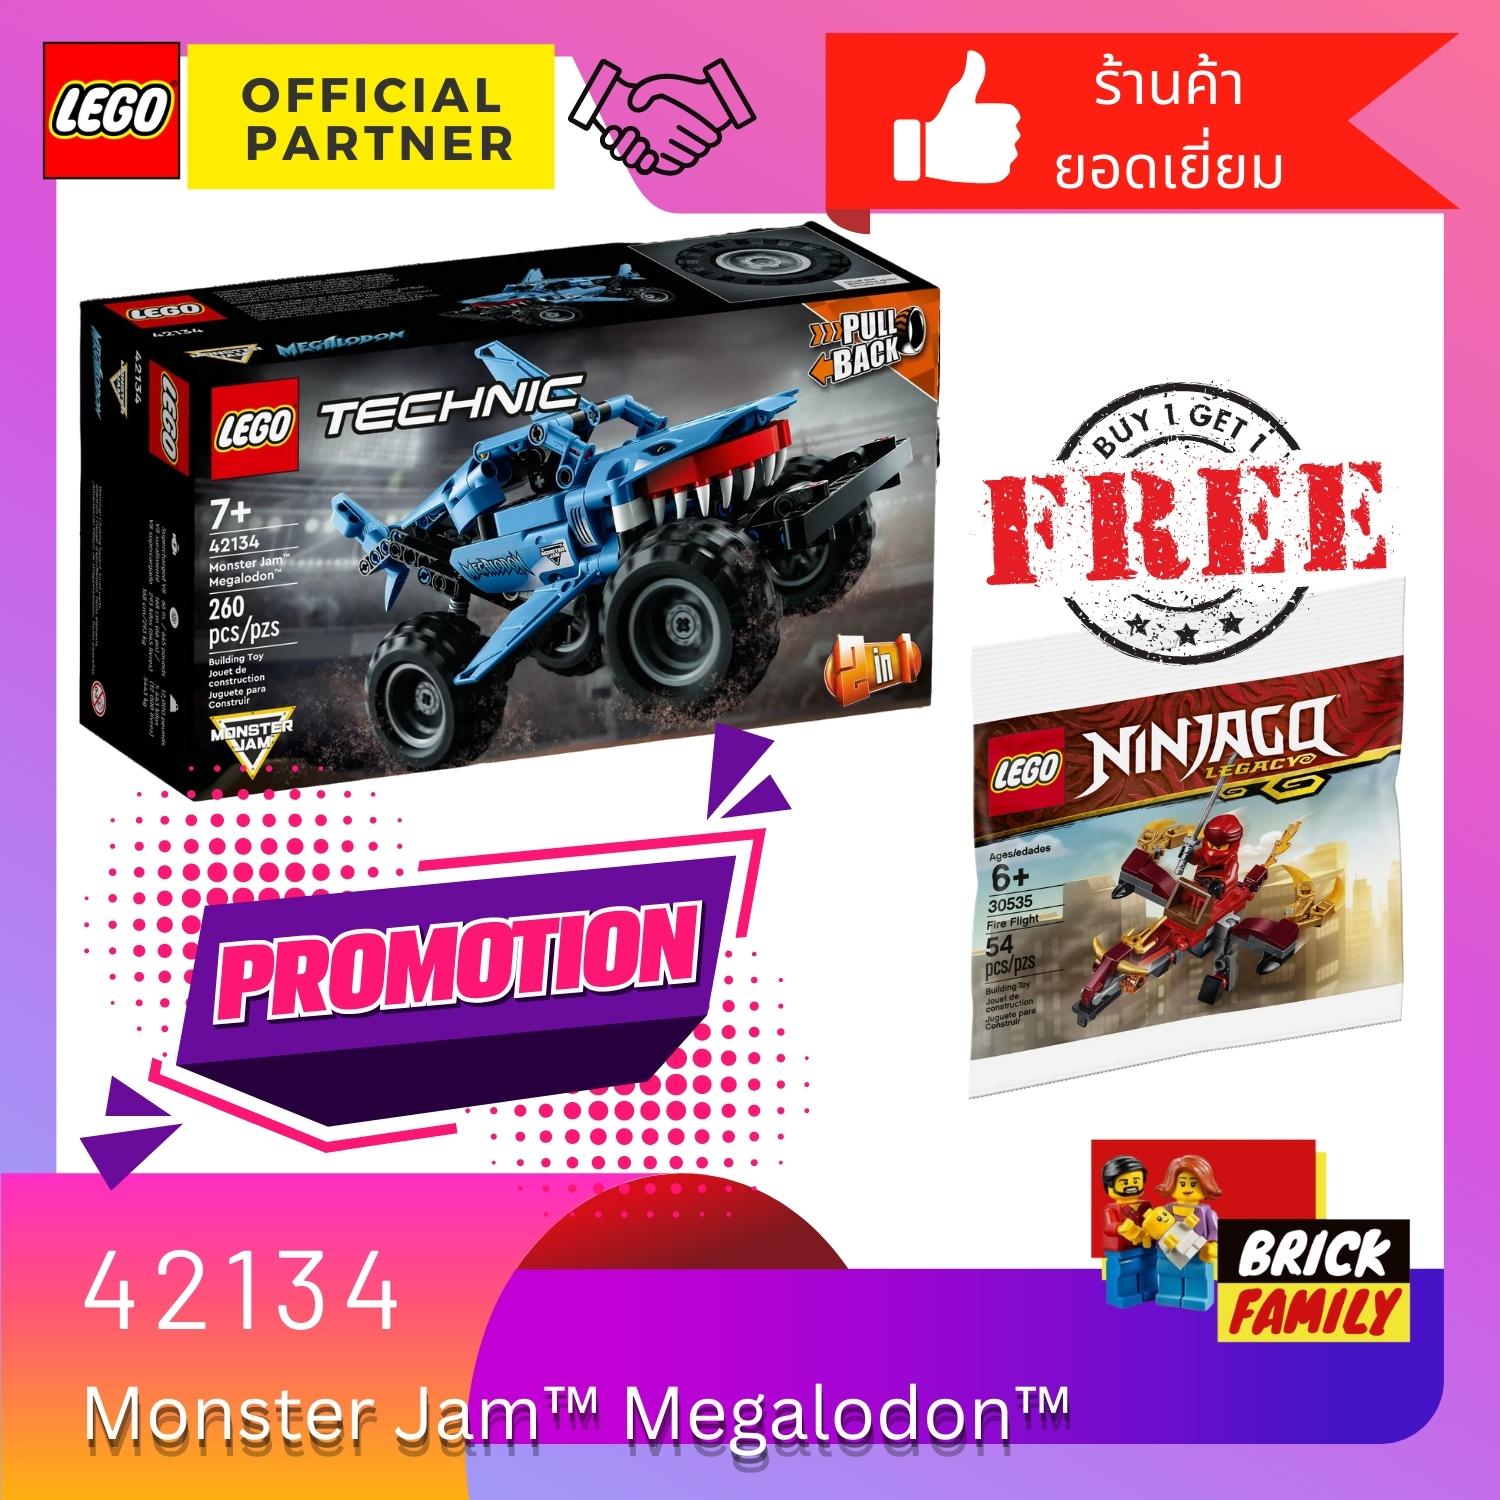 Monster Jam™ Megalodon™ 42134, Technic™